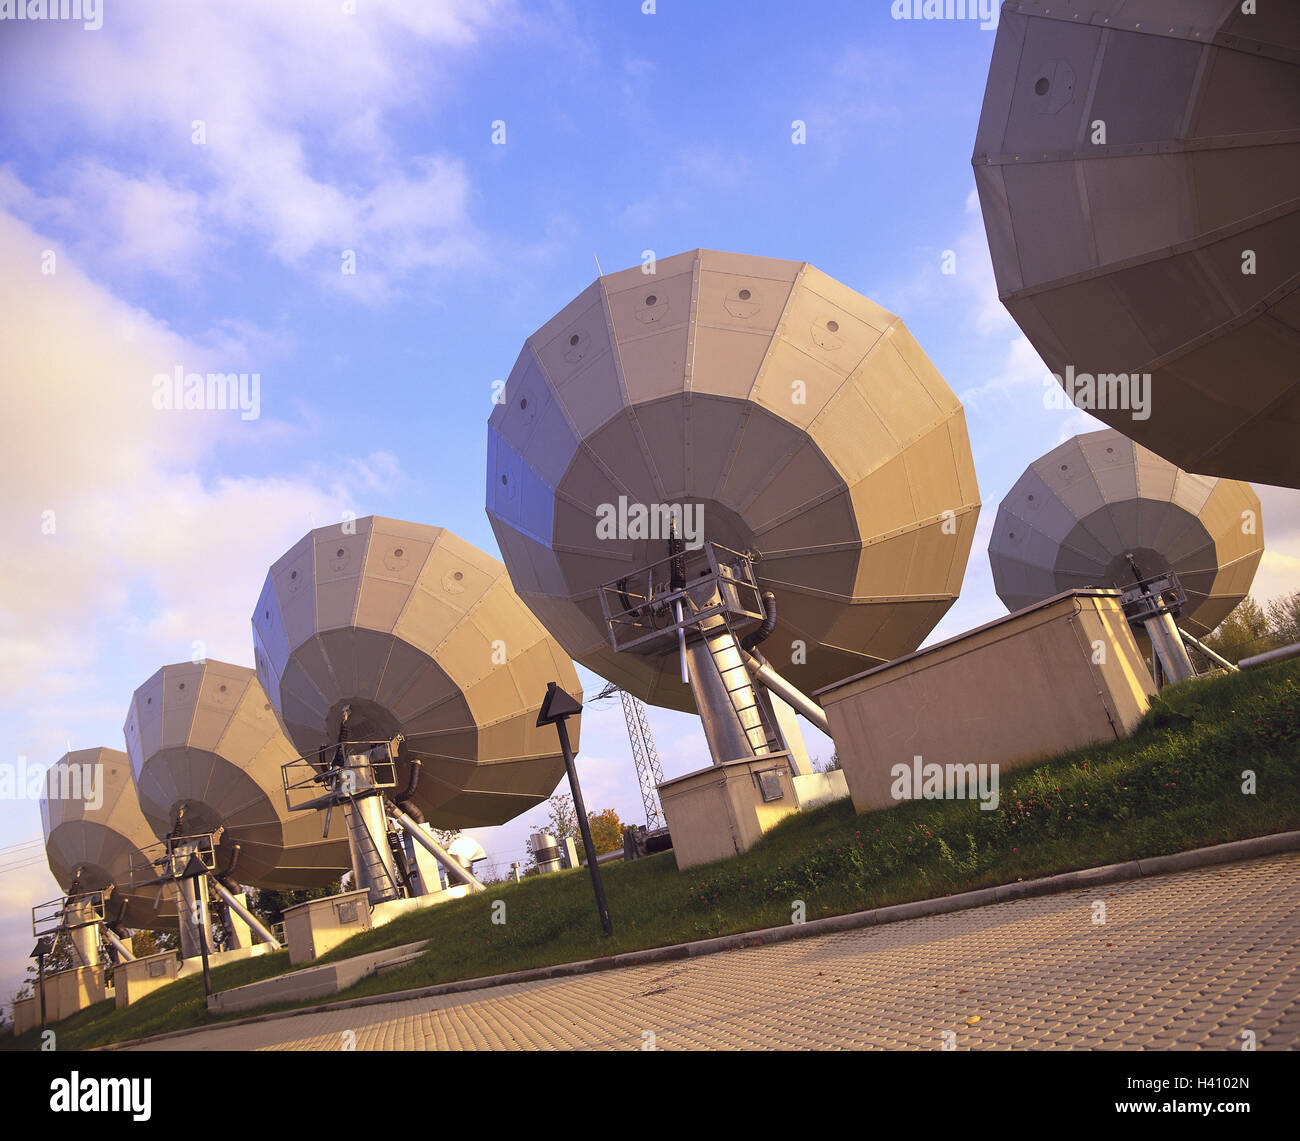 Radioteleskope, Empfang, Teleskope, Radioteleskope, Parabolantennen, Antennen, Astronomie, Radioastronomie, Rezeption, Signal, Sat-Anlage, Sat-Antennen, Satelliten, Datenübertragung, Radar-Überwachung, Satelliten-Empfangsantennen Stockfoto